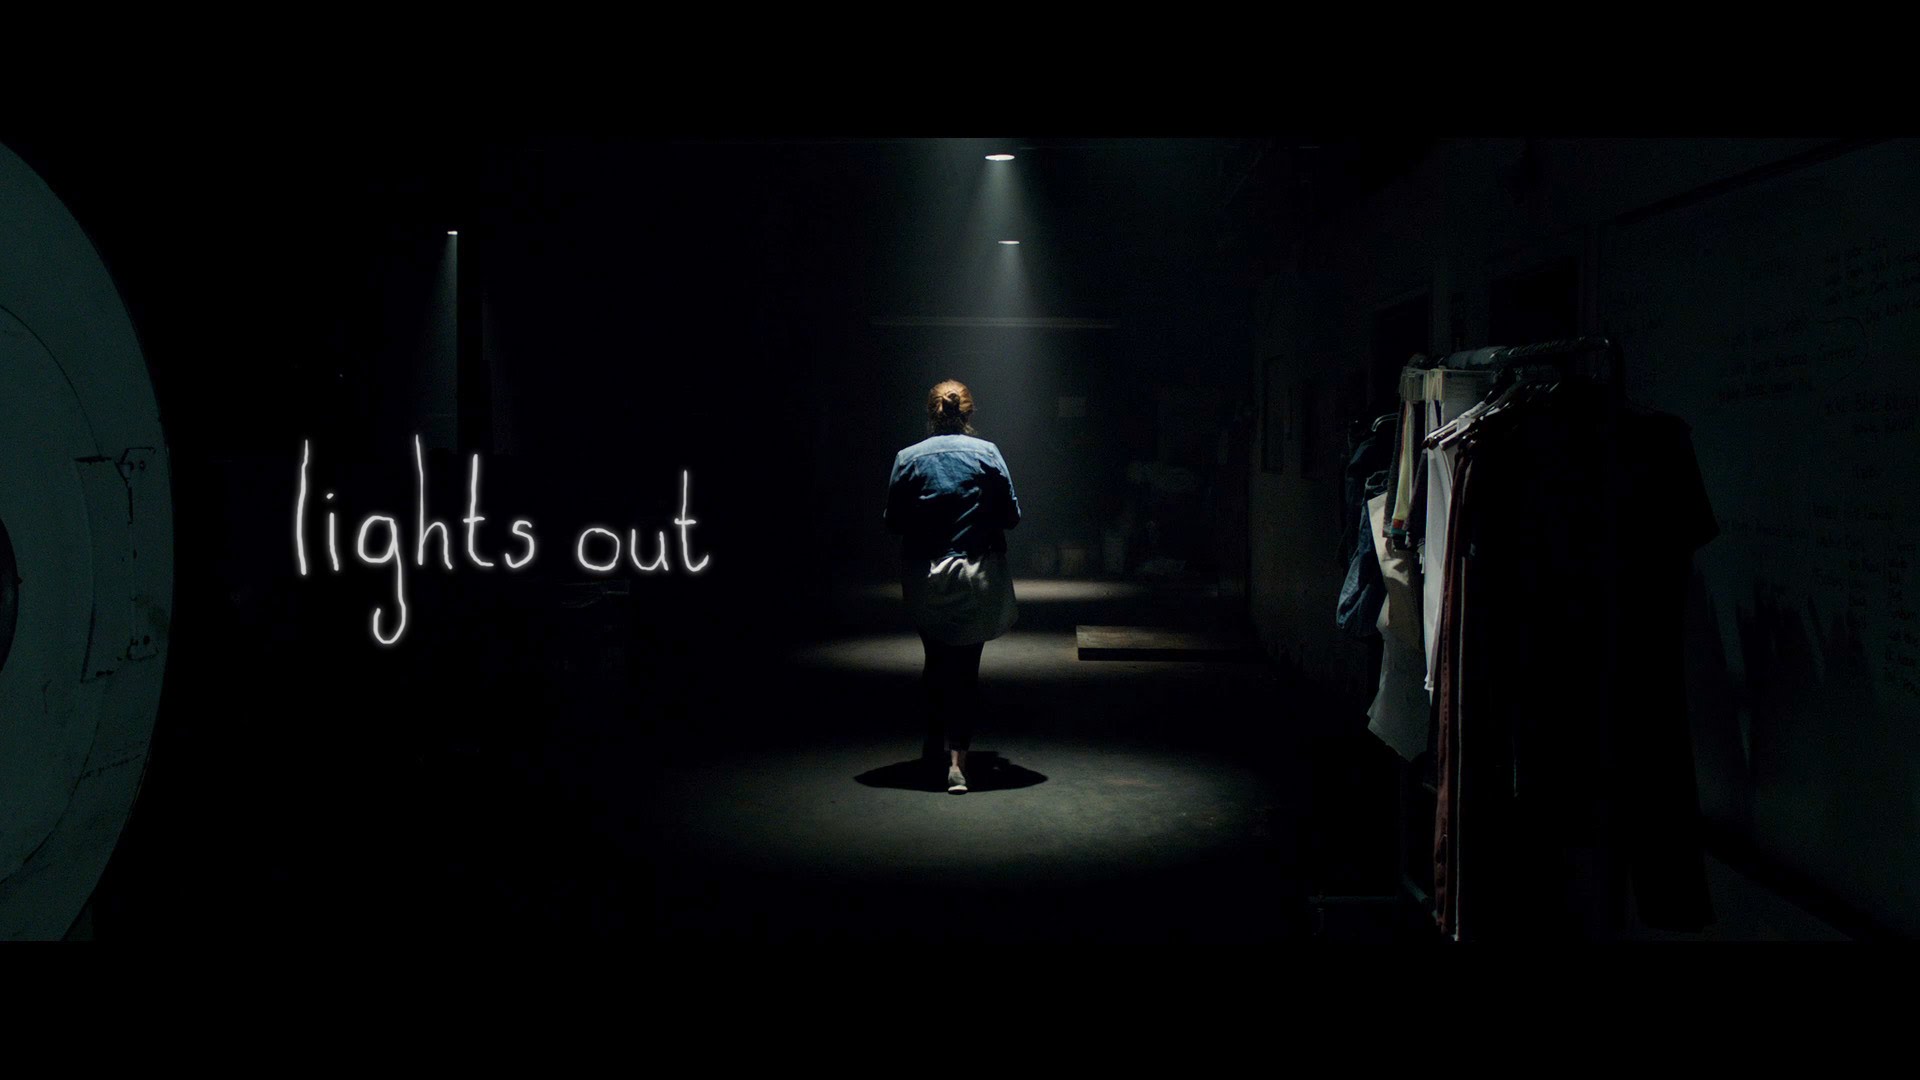 ಸಿನೆಮಾ ವಿಮರ್ಶೆ : “Lights out” (2016-ಇಂಗ್ಲಿಷ್)